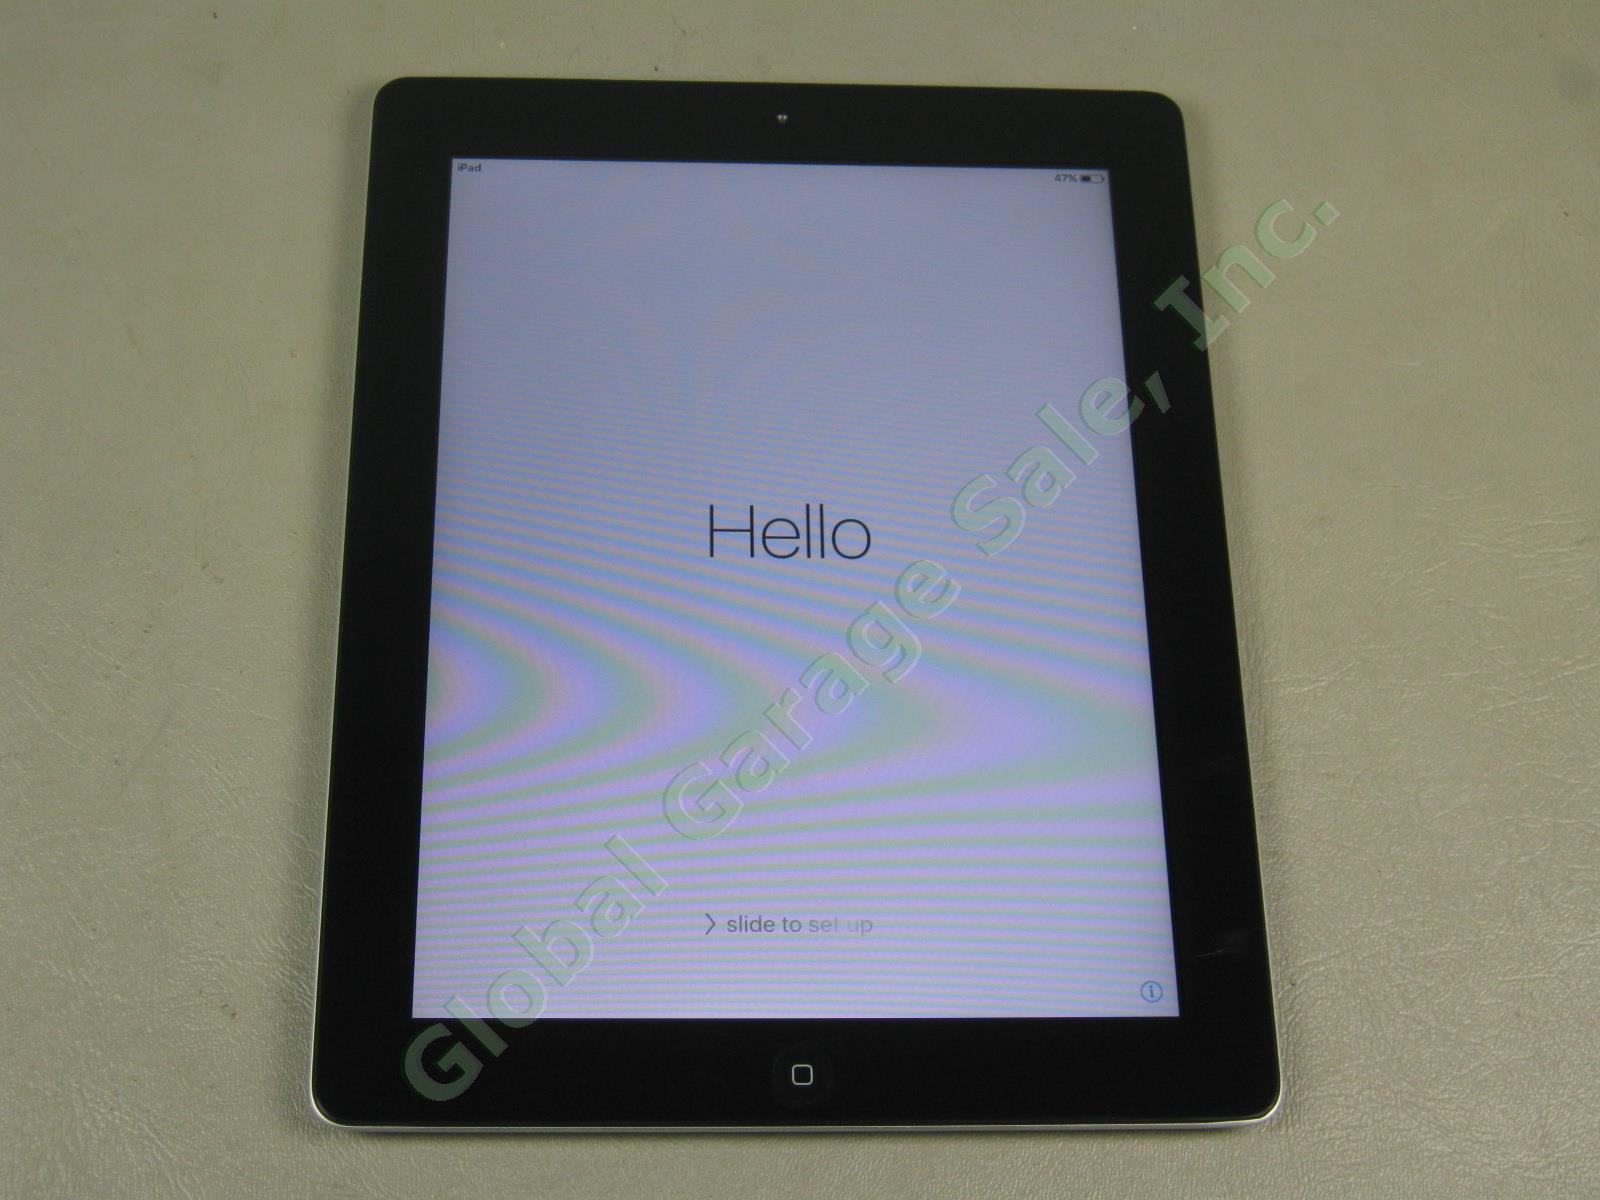 Apple iPad 2 Wifi 32GB Black Tablet MC770LL/A A1395 Factory Reset No Reserve!